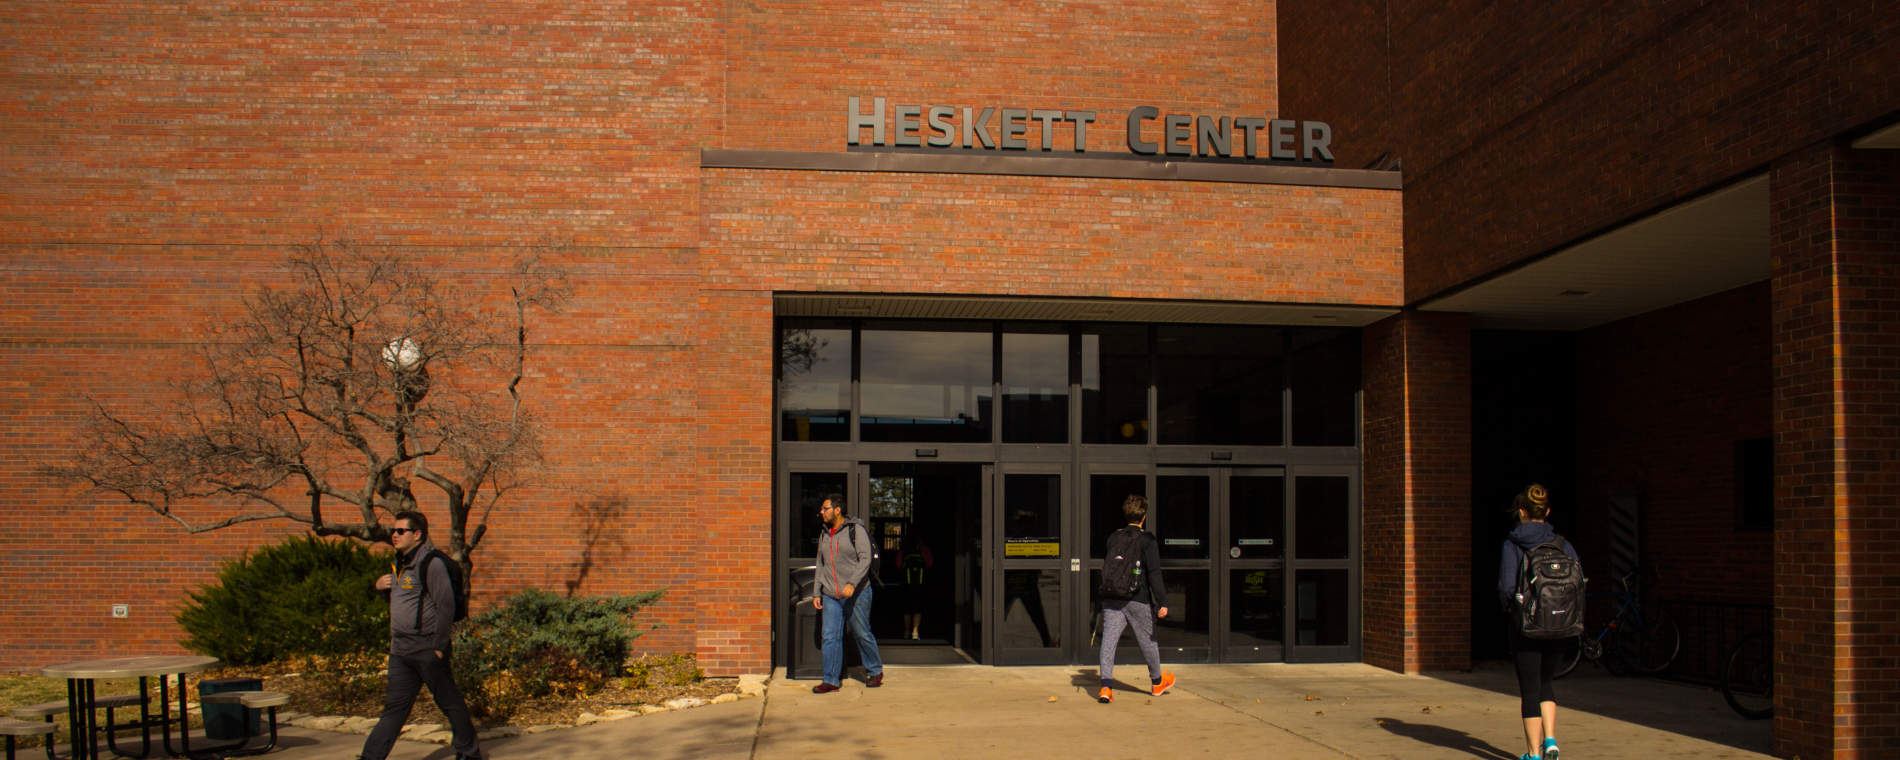 Heskett Center